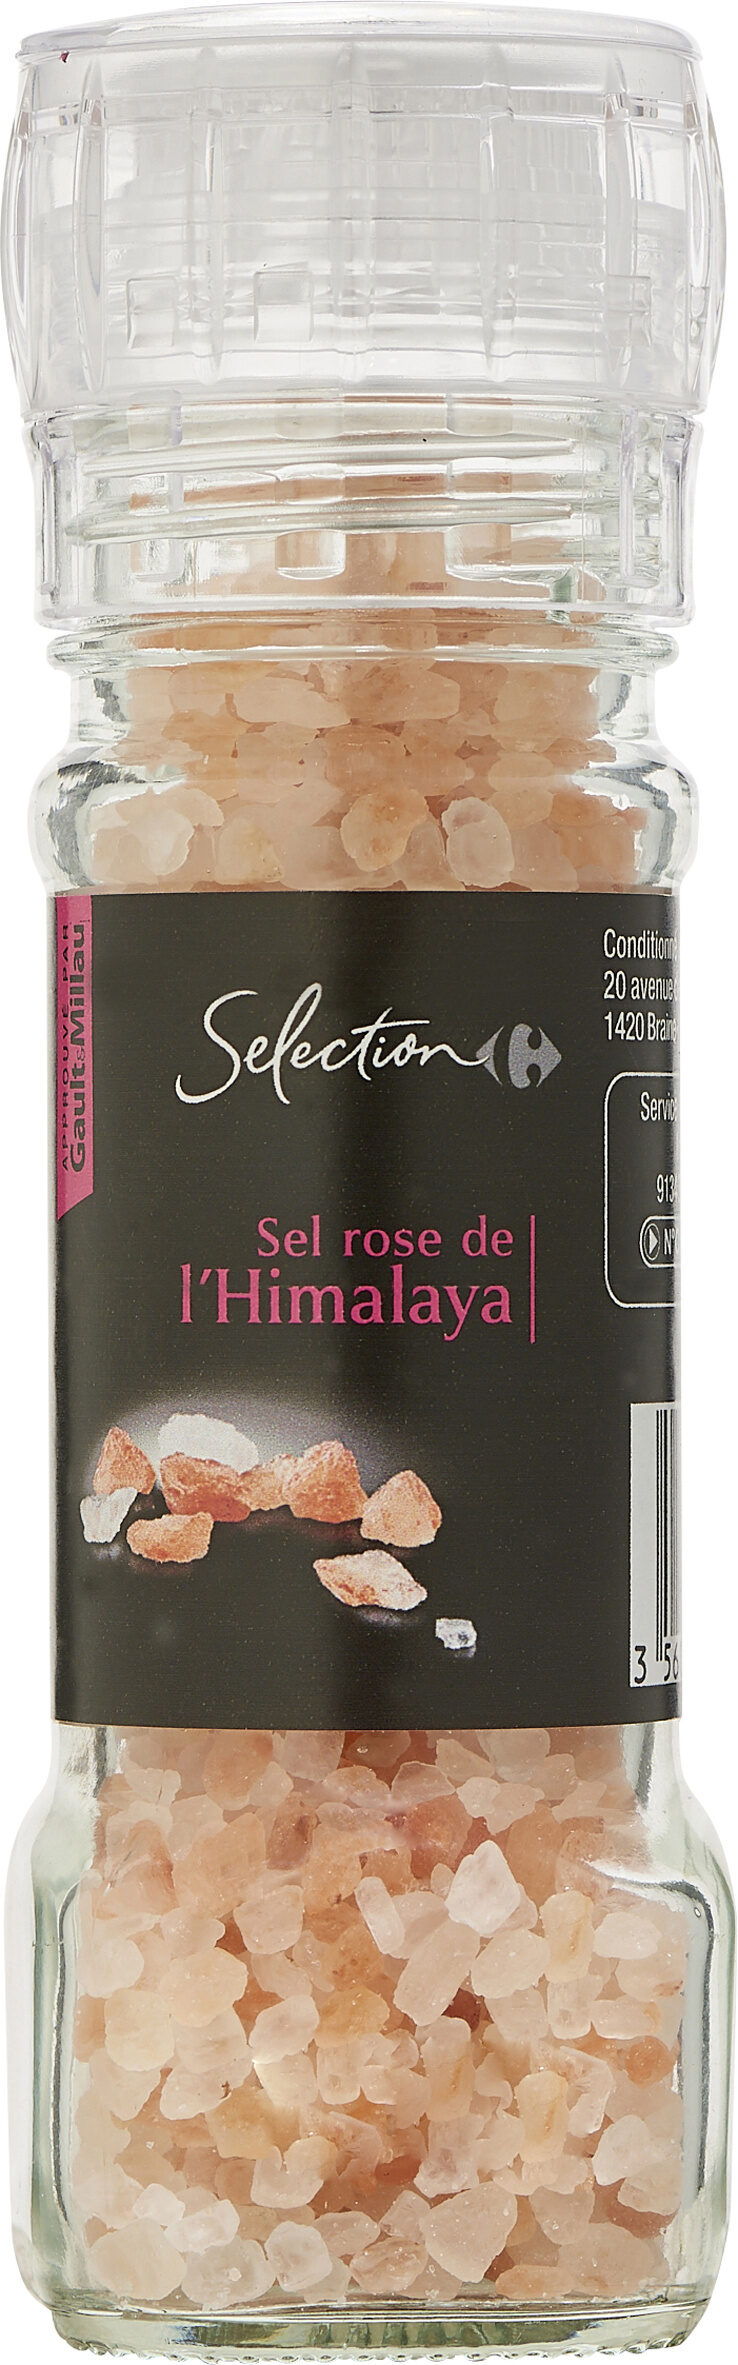 Sel rose de l'himalaya - Prodotto - fr